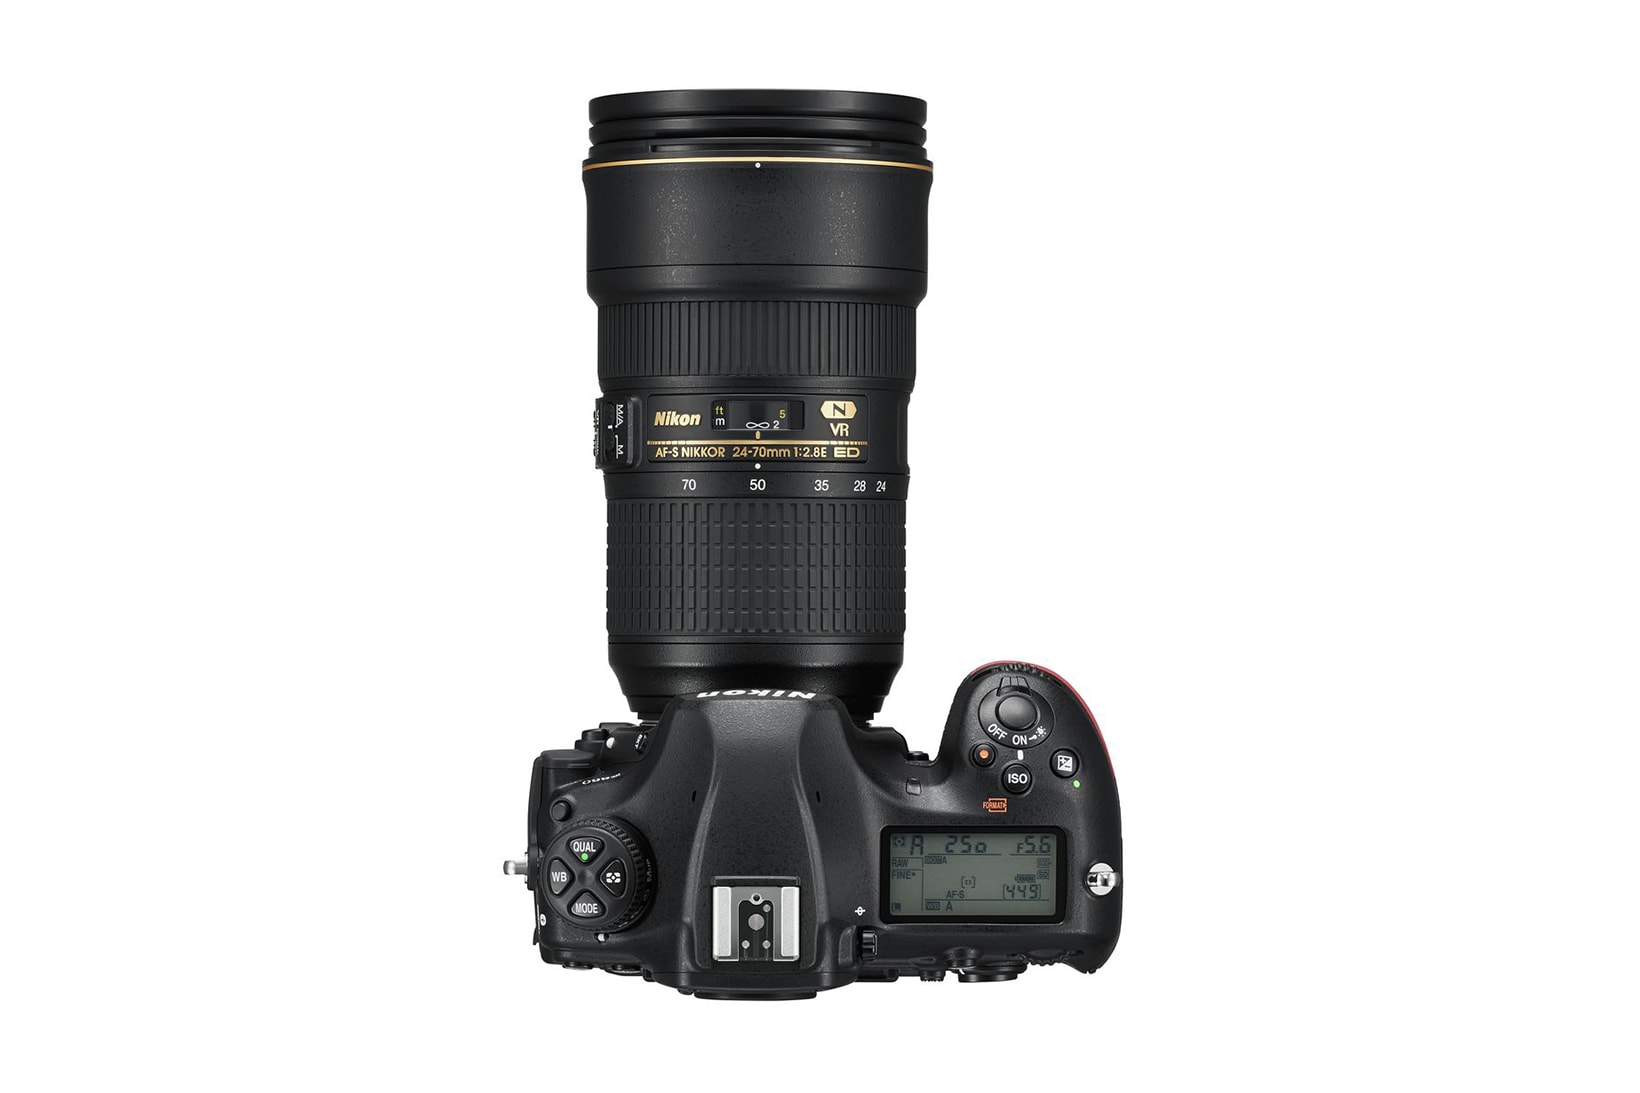 Nikon D850 DSLR Camera Official 45 7 Megapixels 4K